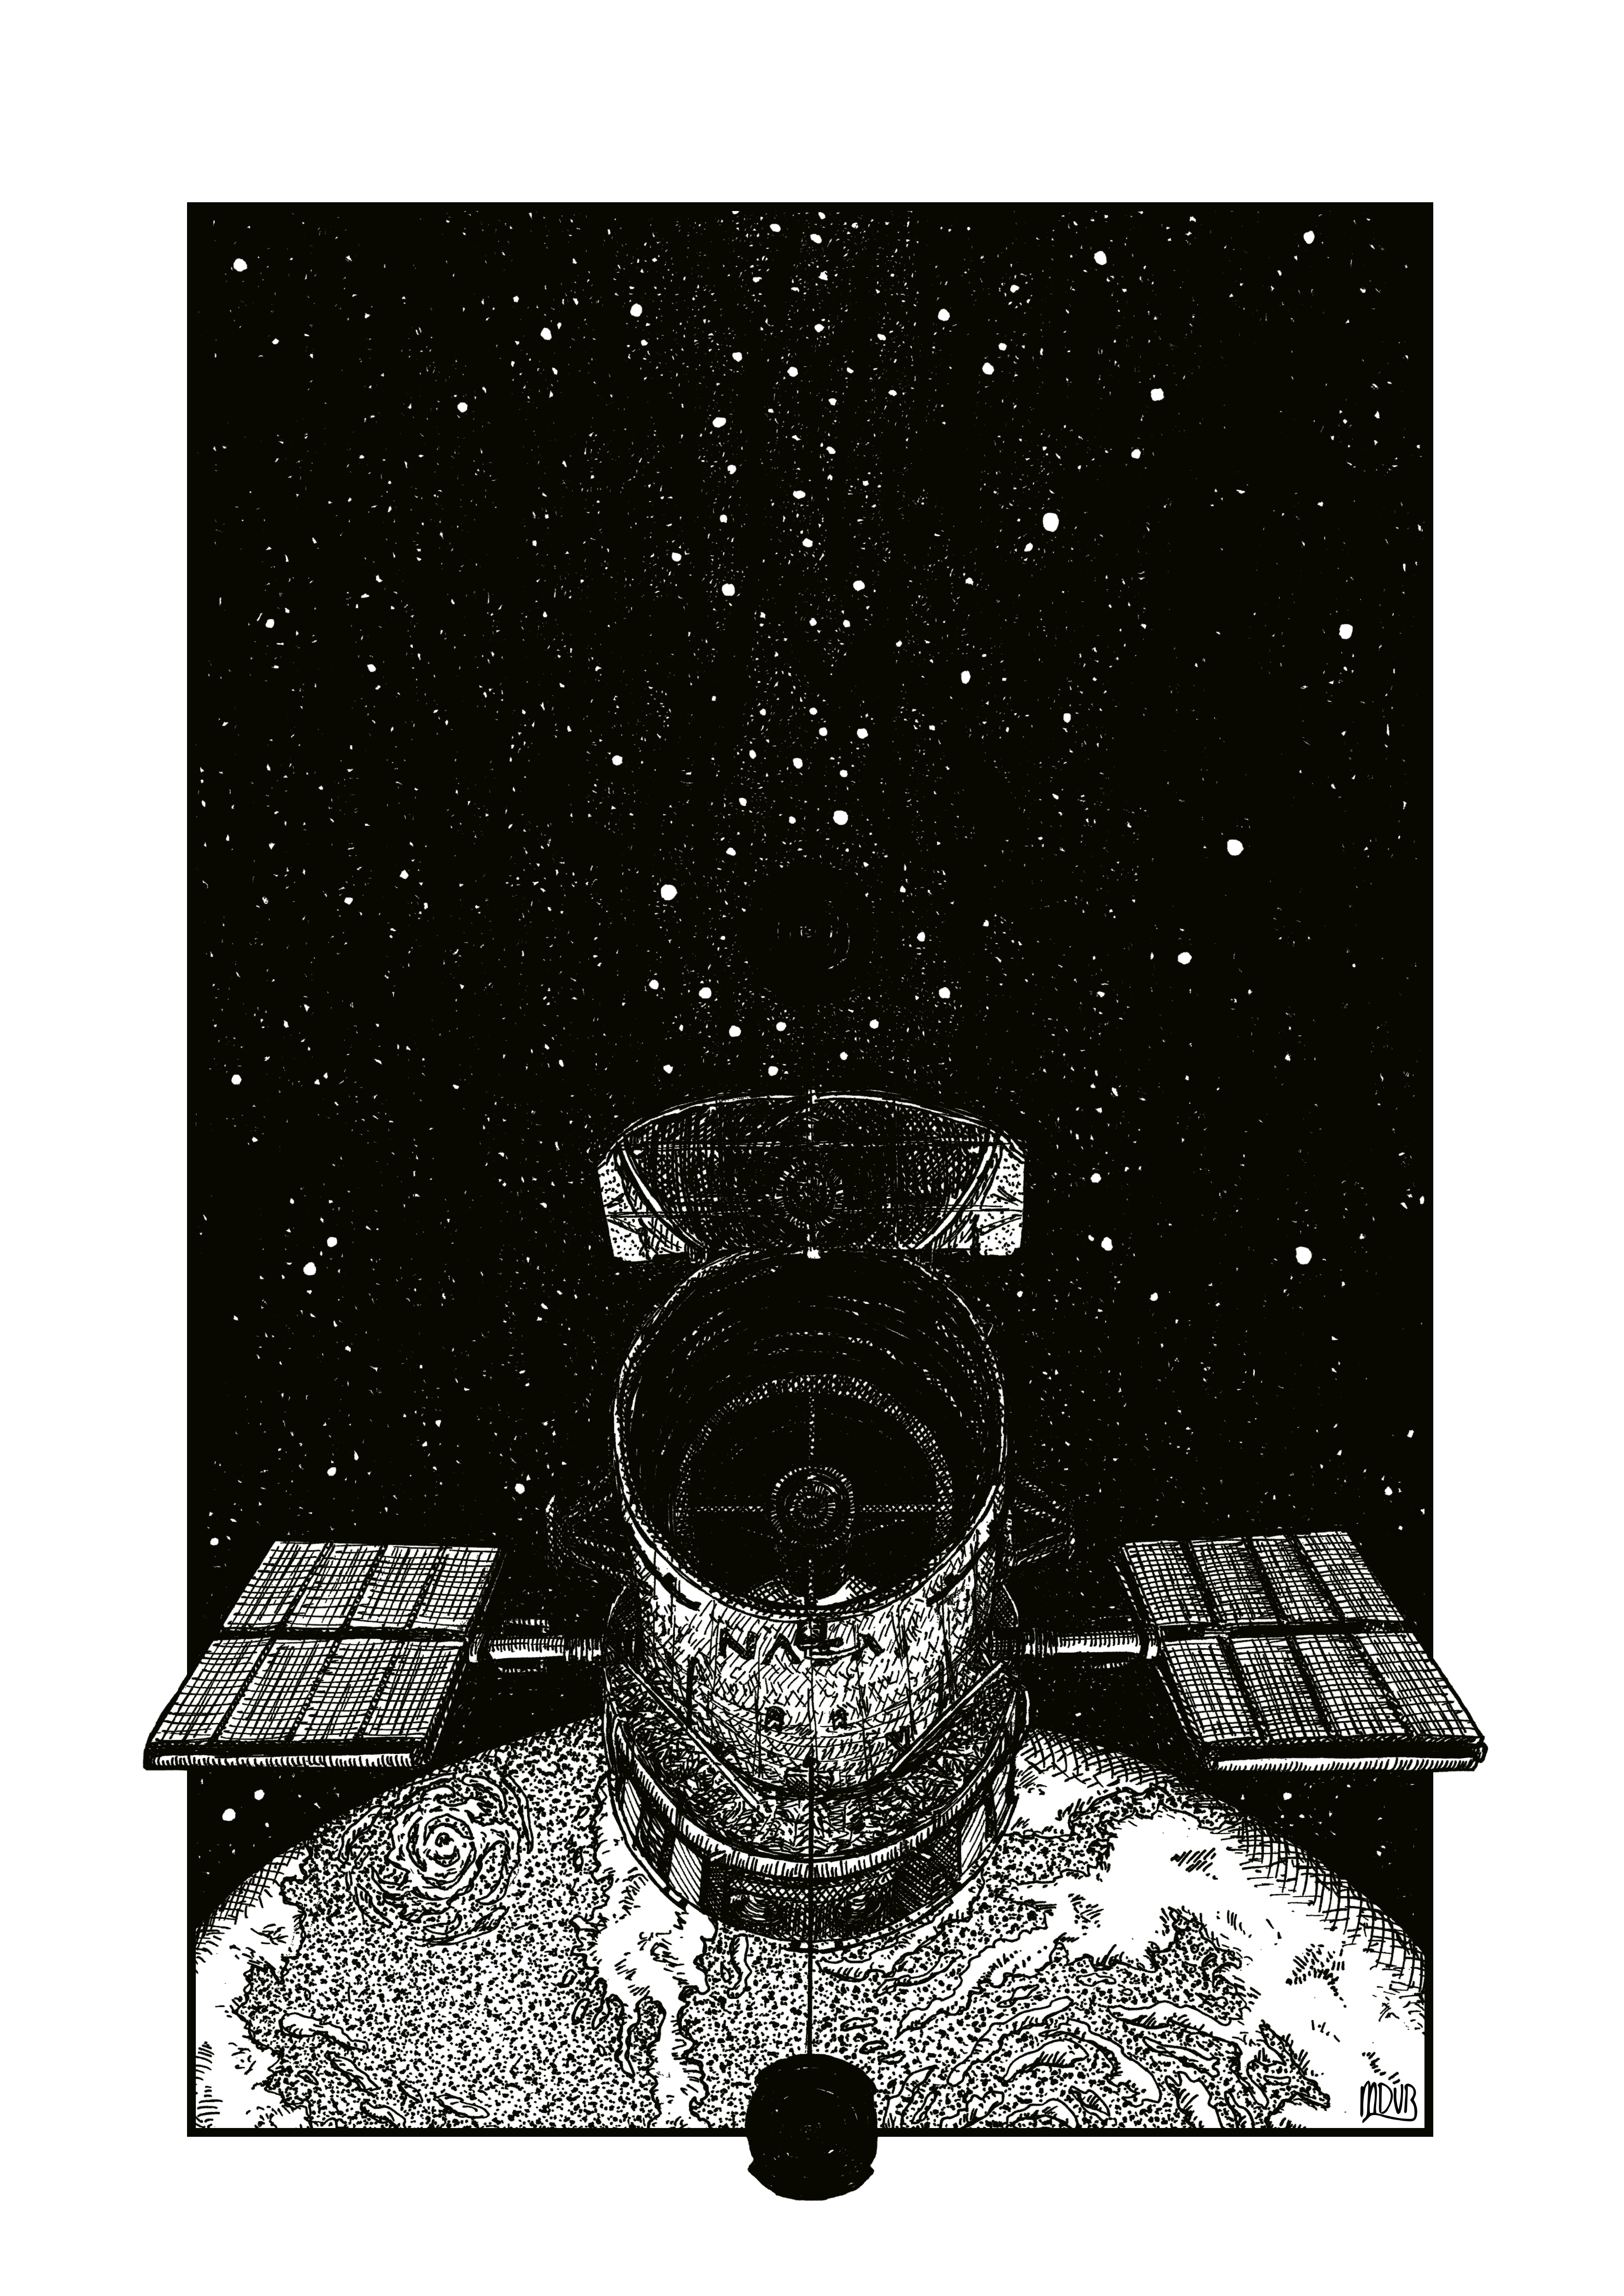 HubbleSpaceTelescope_A3